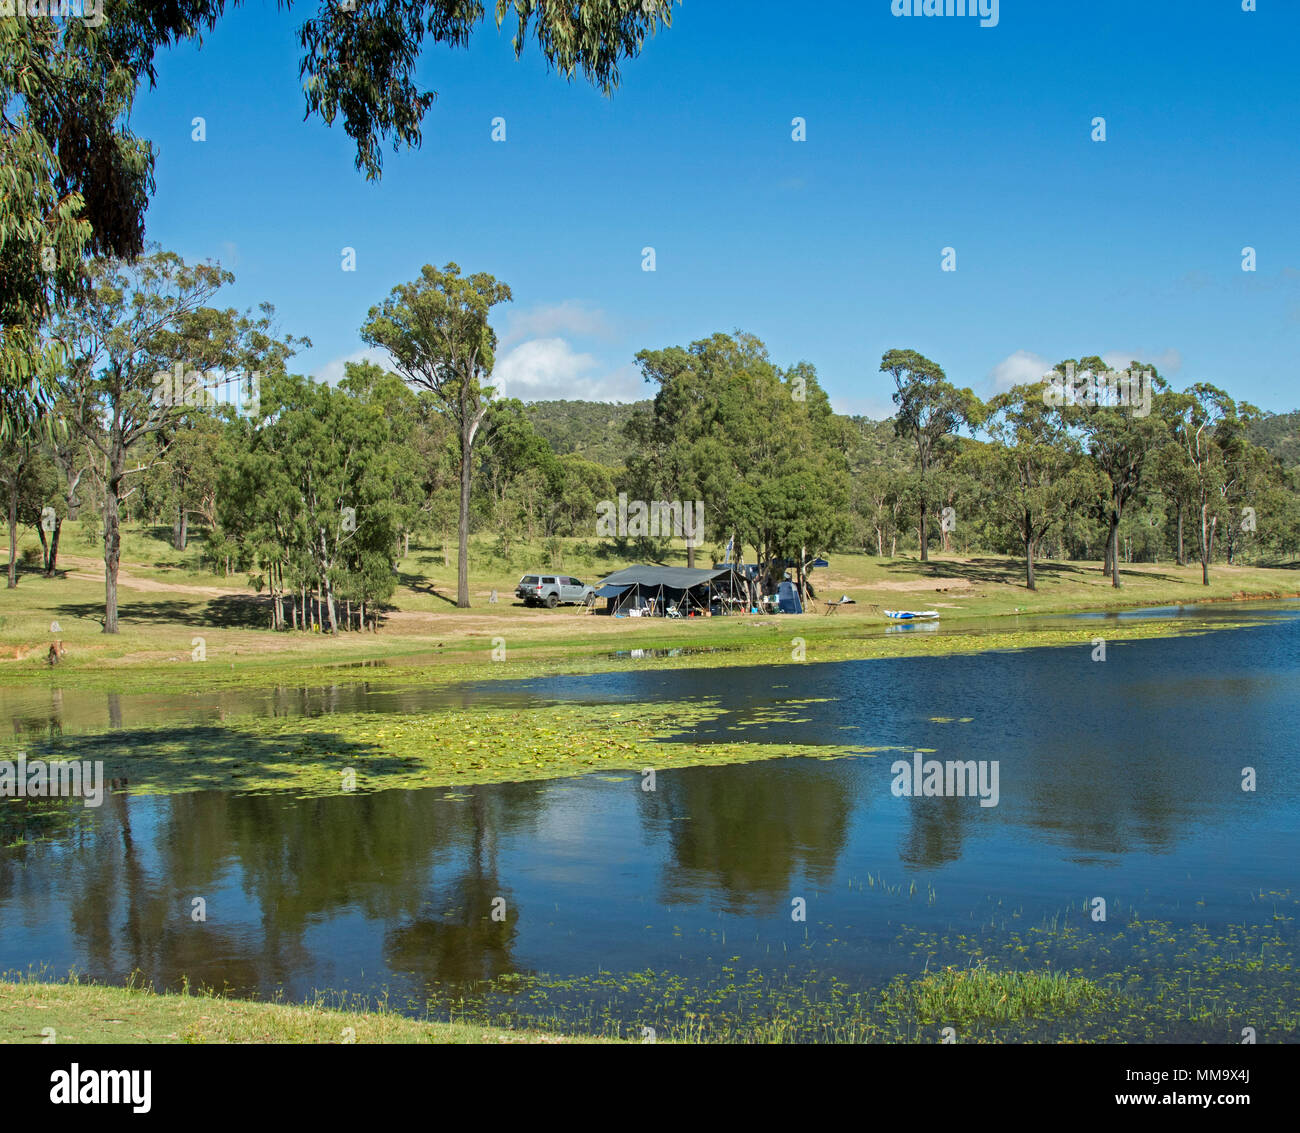 Les campeurs avec une tente et une voiture dans un paysage boisé qui se reflète dans les eaux calmes du lac bleu sous ciel bleu à Eungalla Australie barrage Banque D'Images